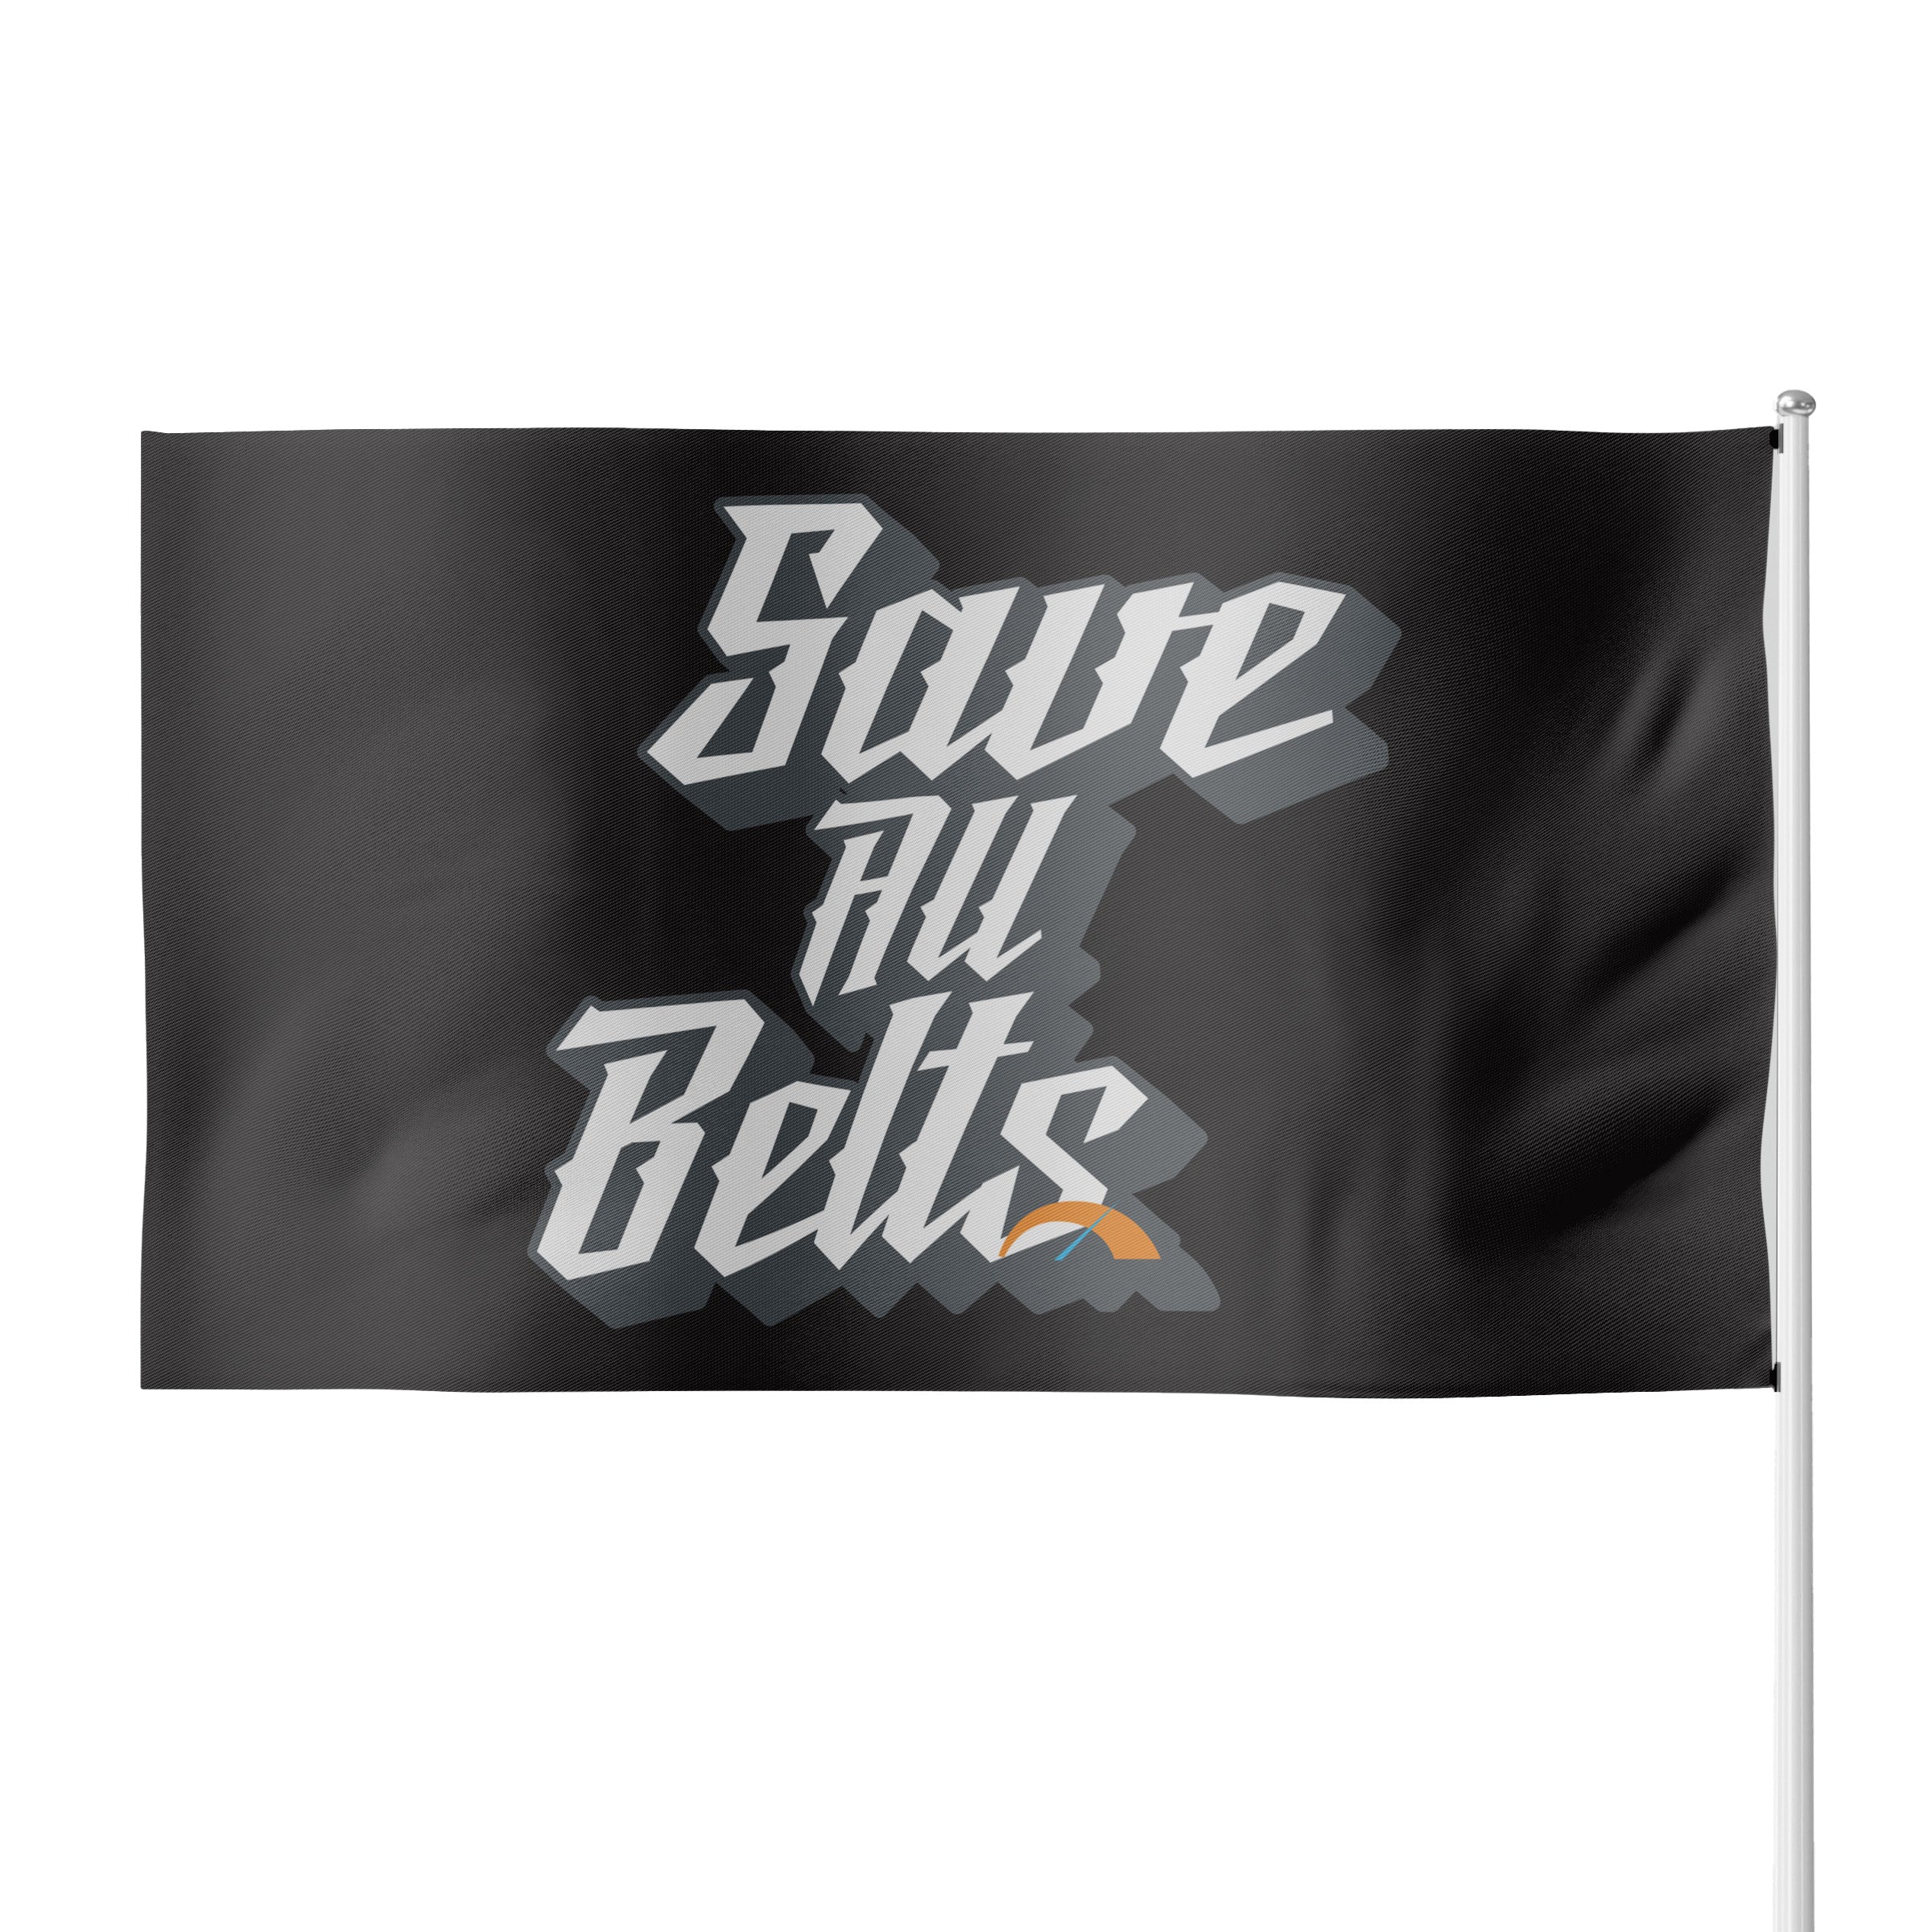 Save All BeltsFlag (Passenger Side)